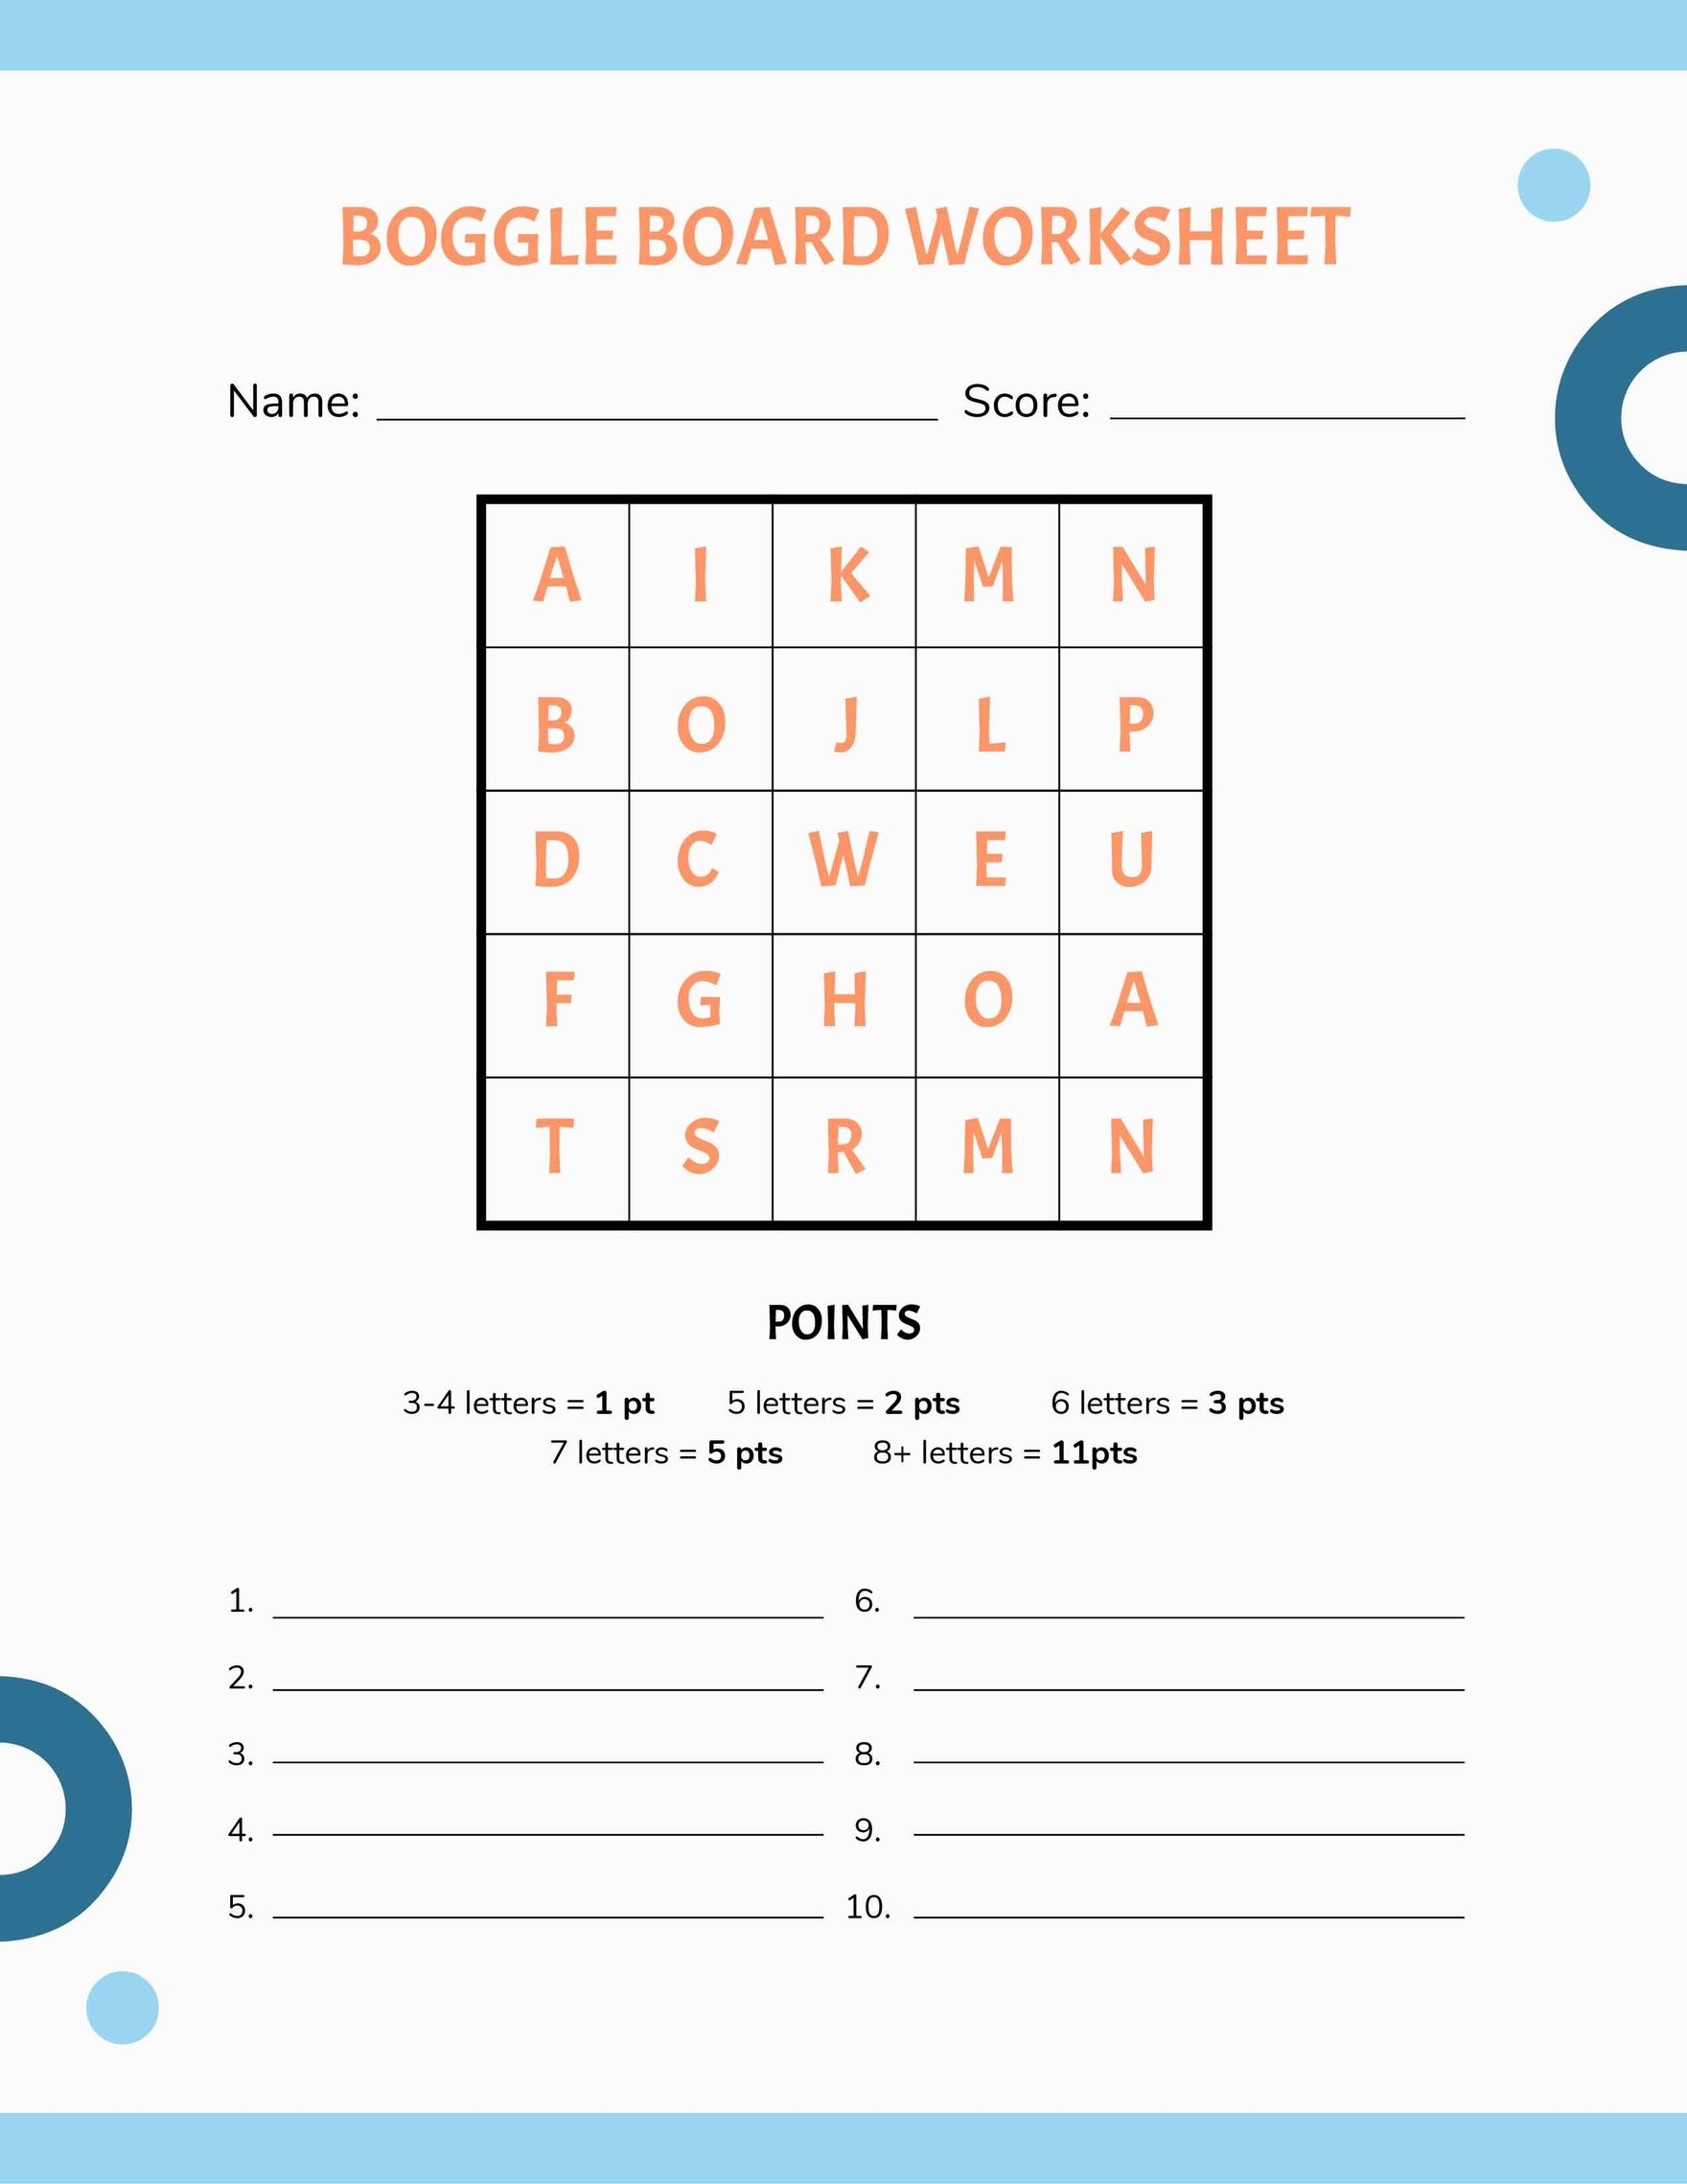 Boggle Board Worksheet Template